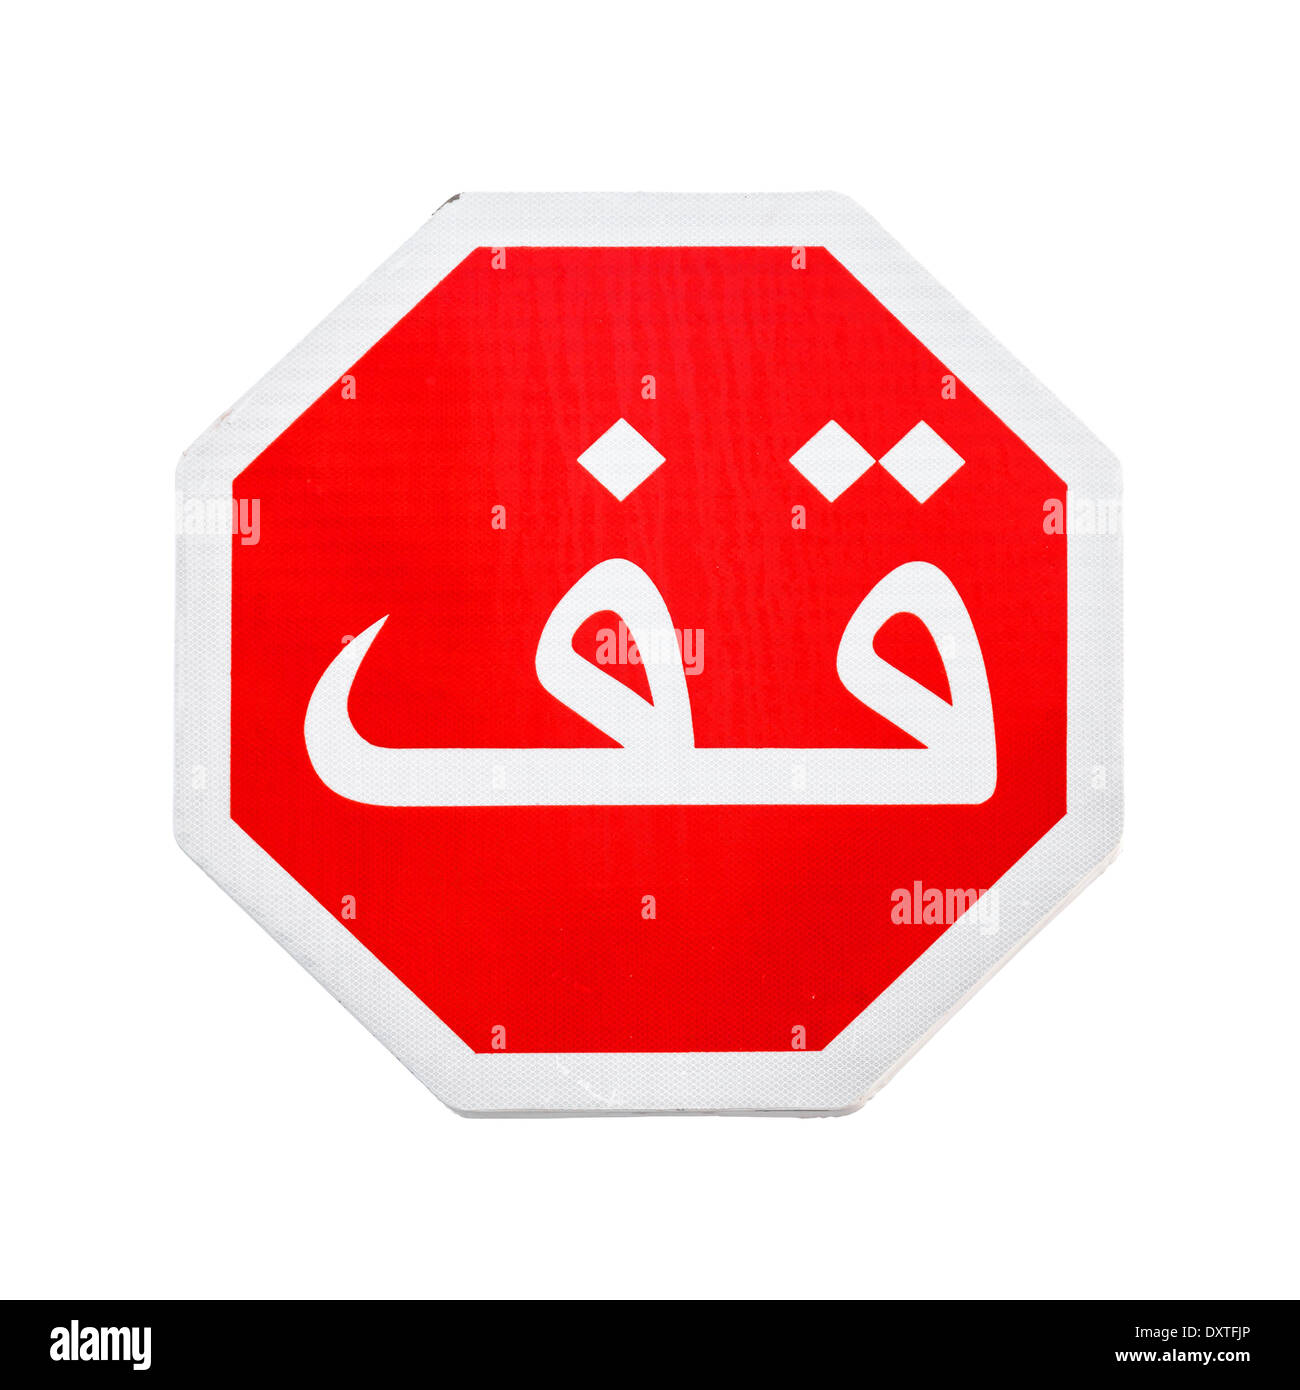 Panneau d'arrêt rouge avec texte arabe label isolated on white Banque D'Images